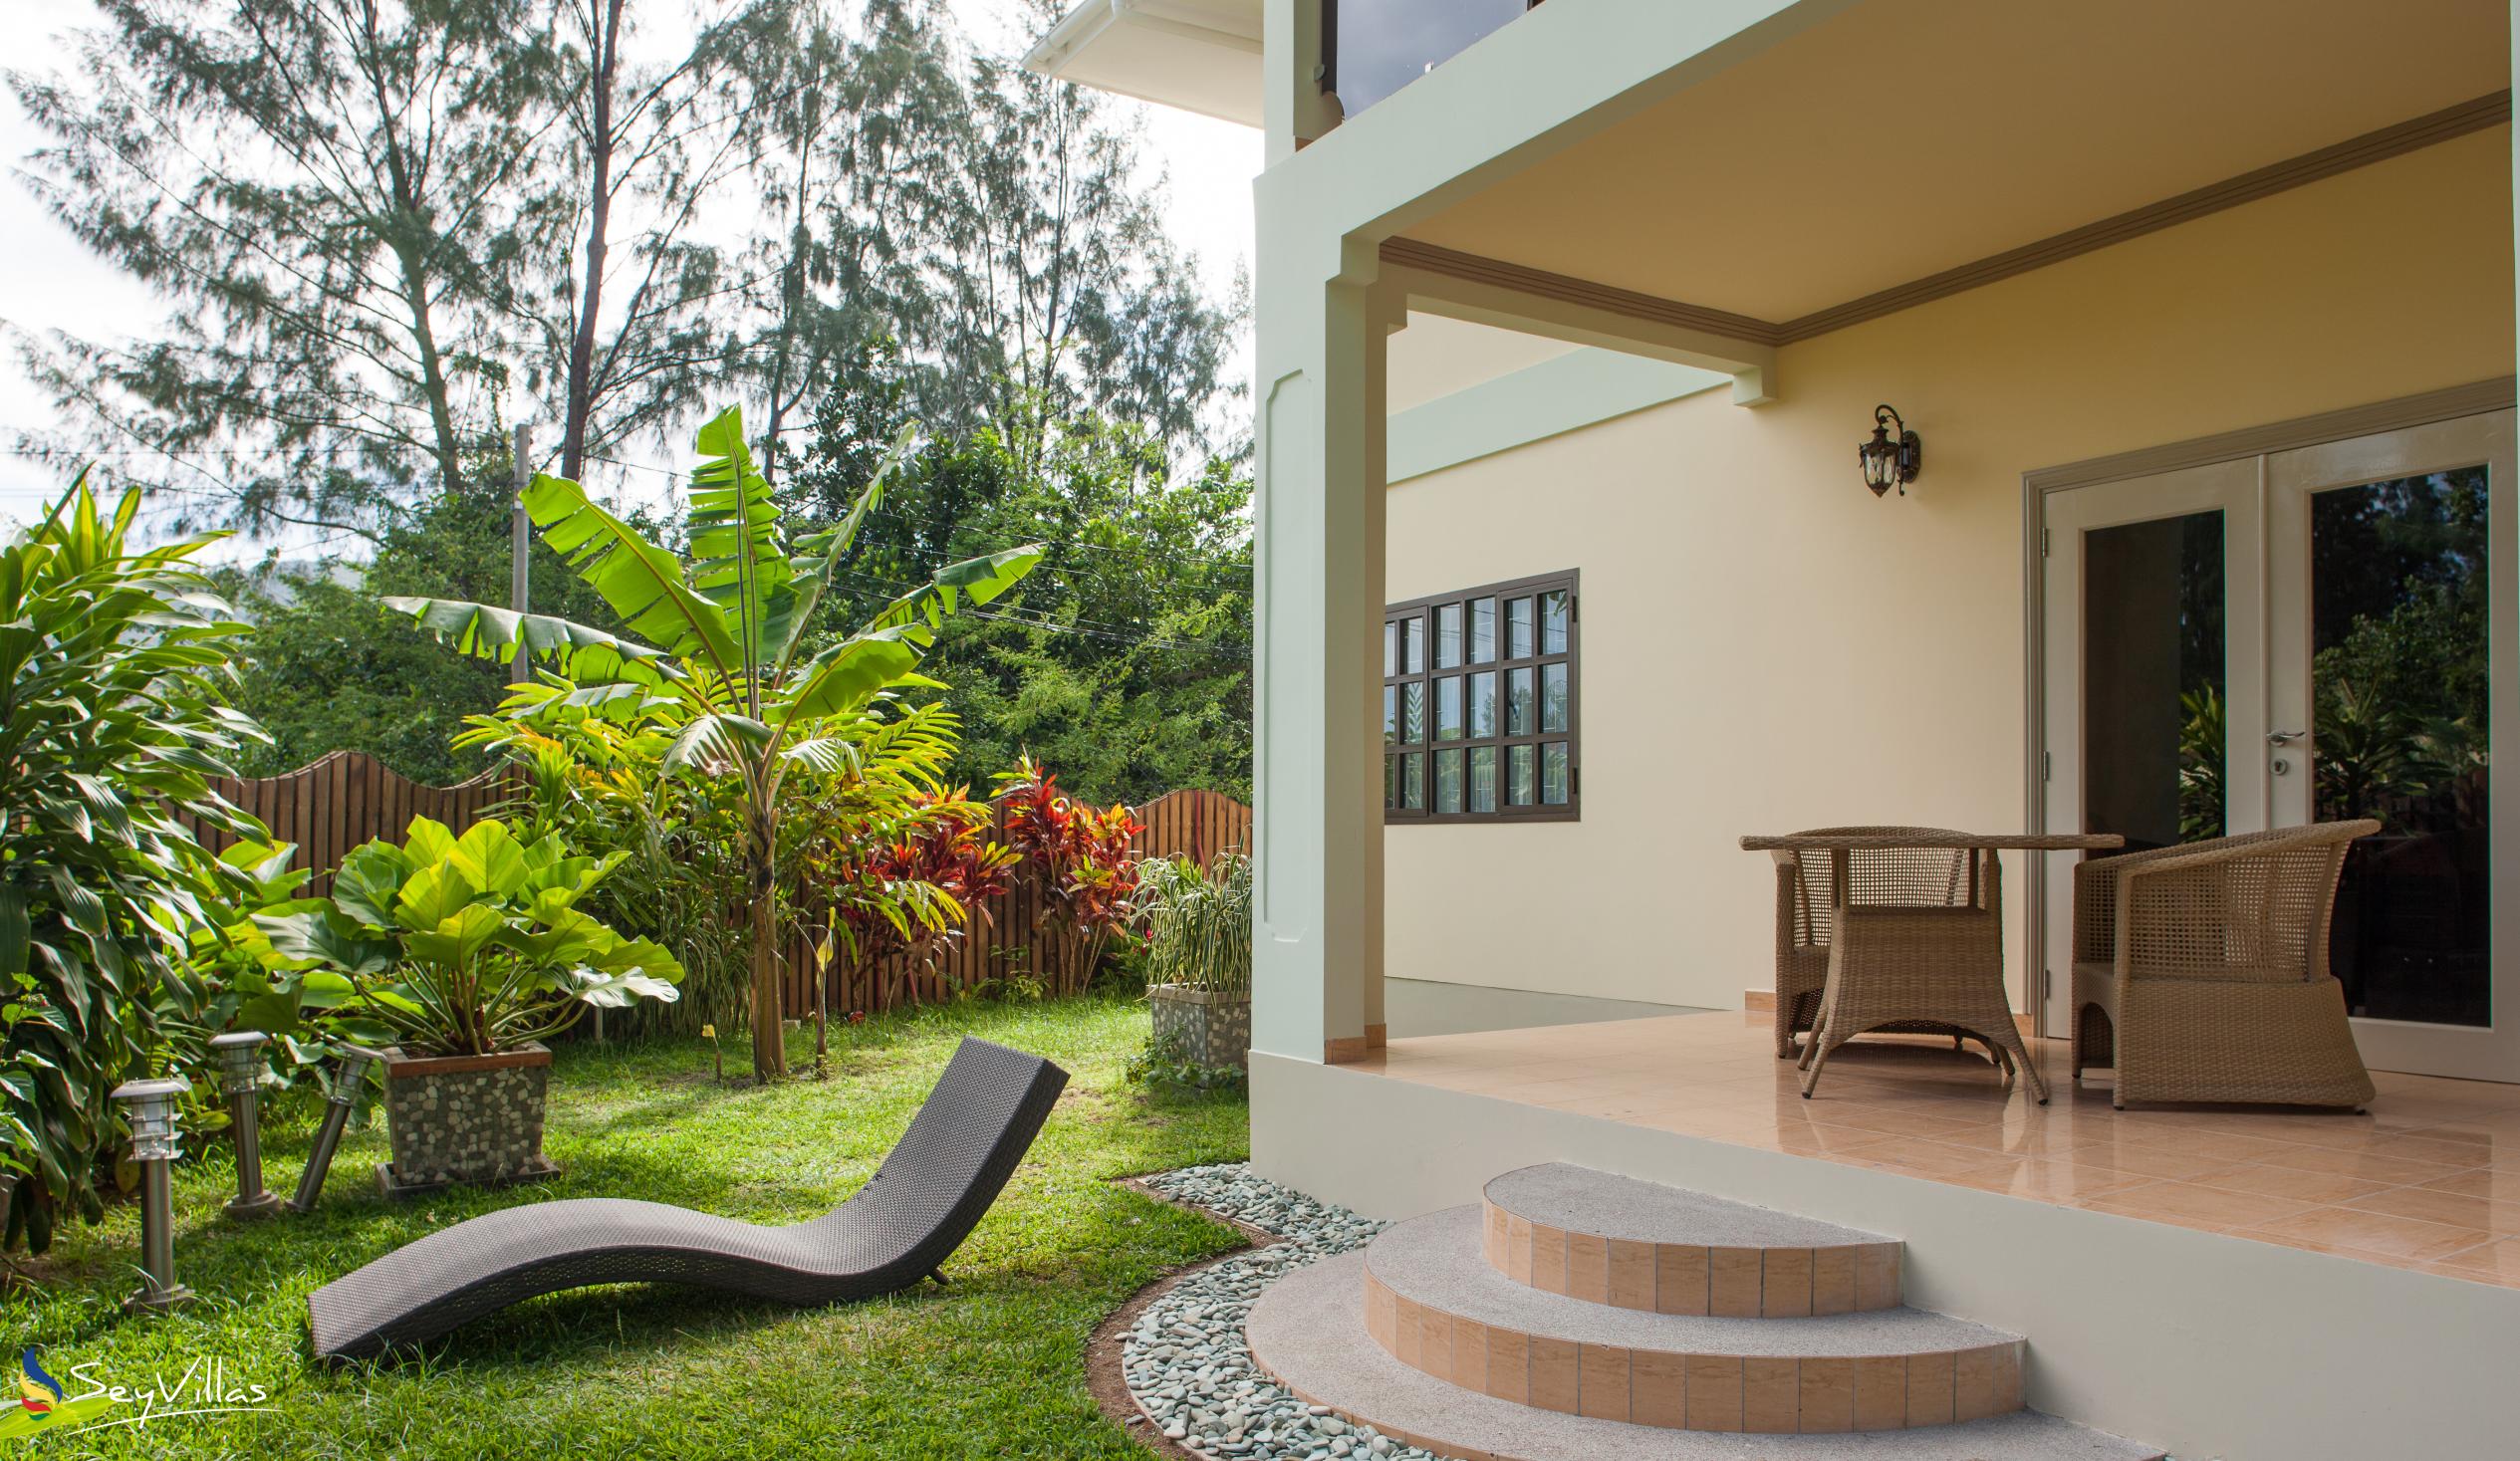 Foto 16: Chez Bea Villa - Aussenbereich - Praslin (Seychellen)